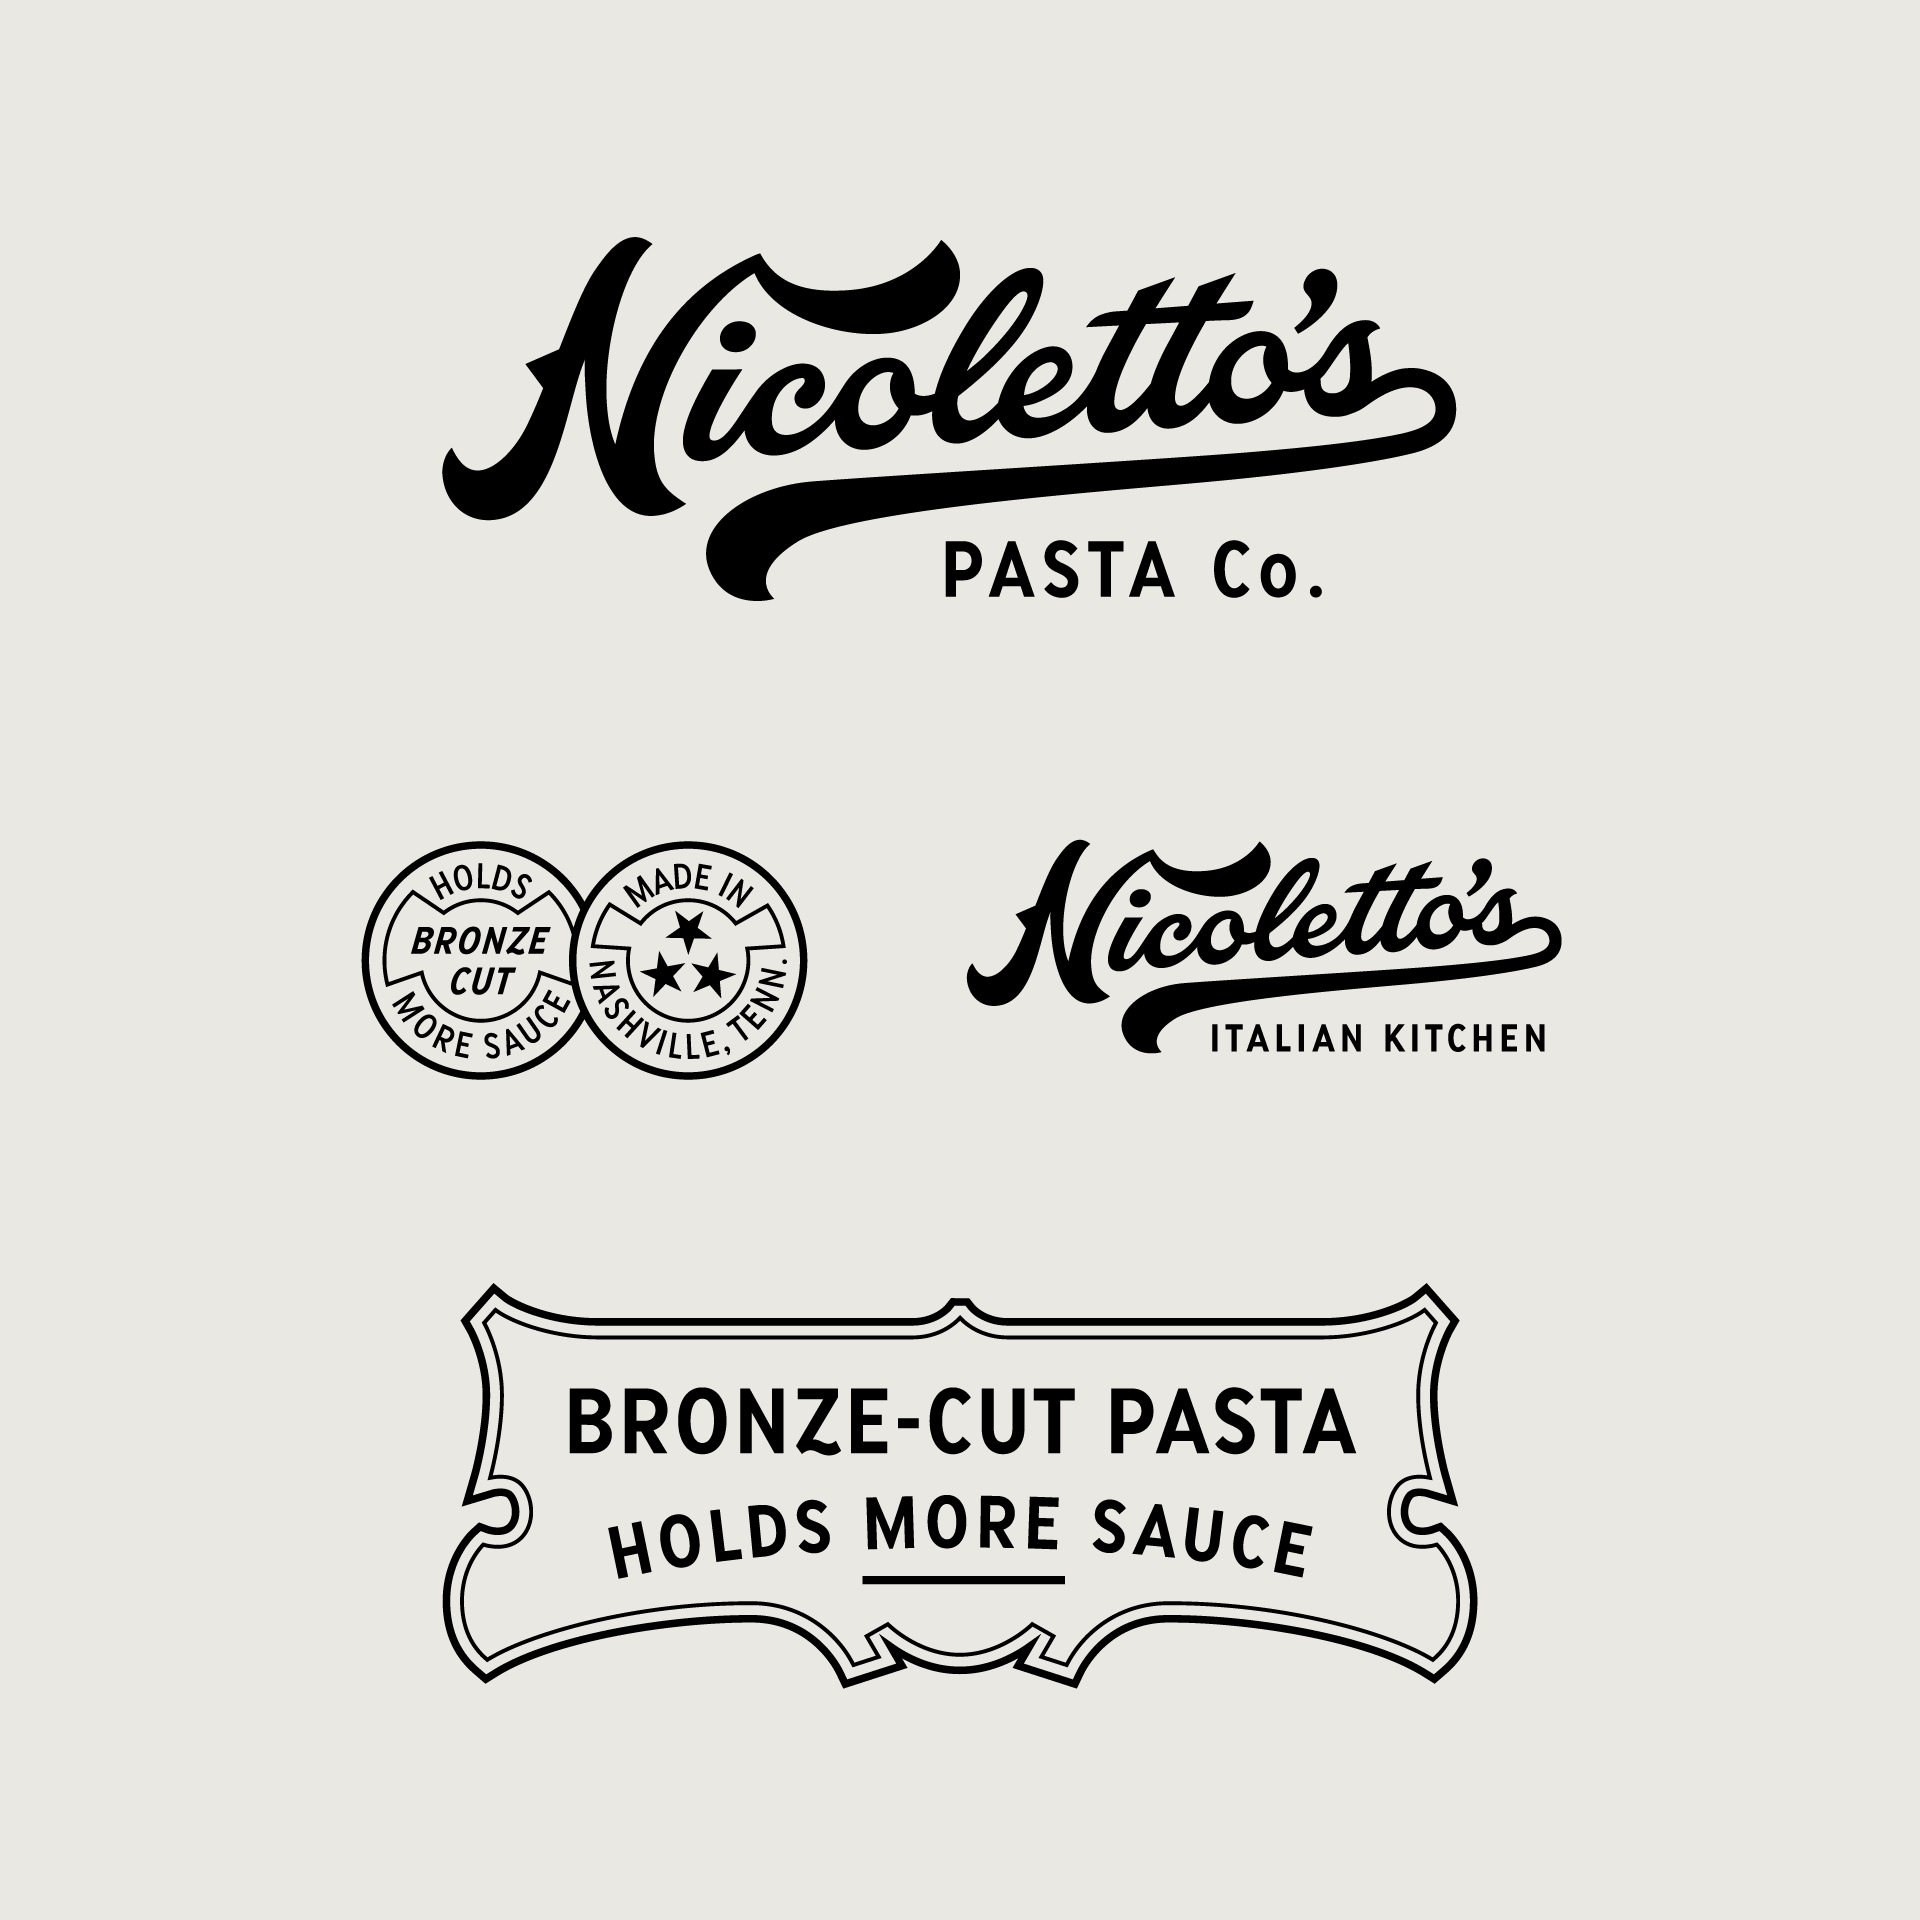 Nicolettos Logo secondary marks